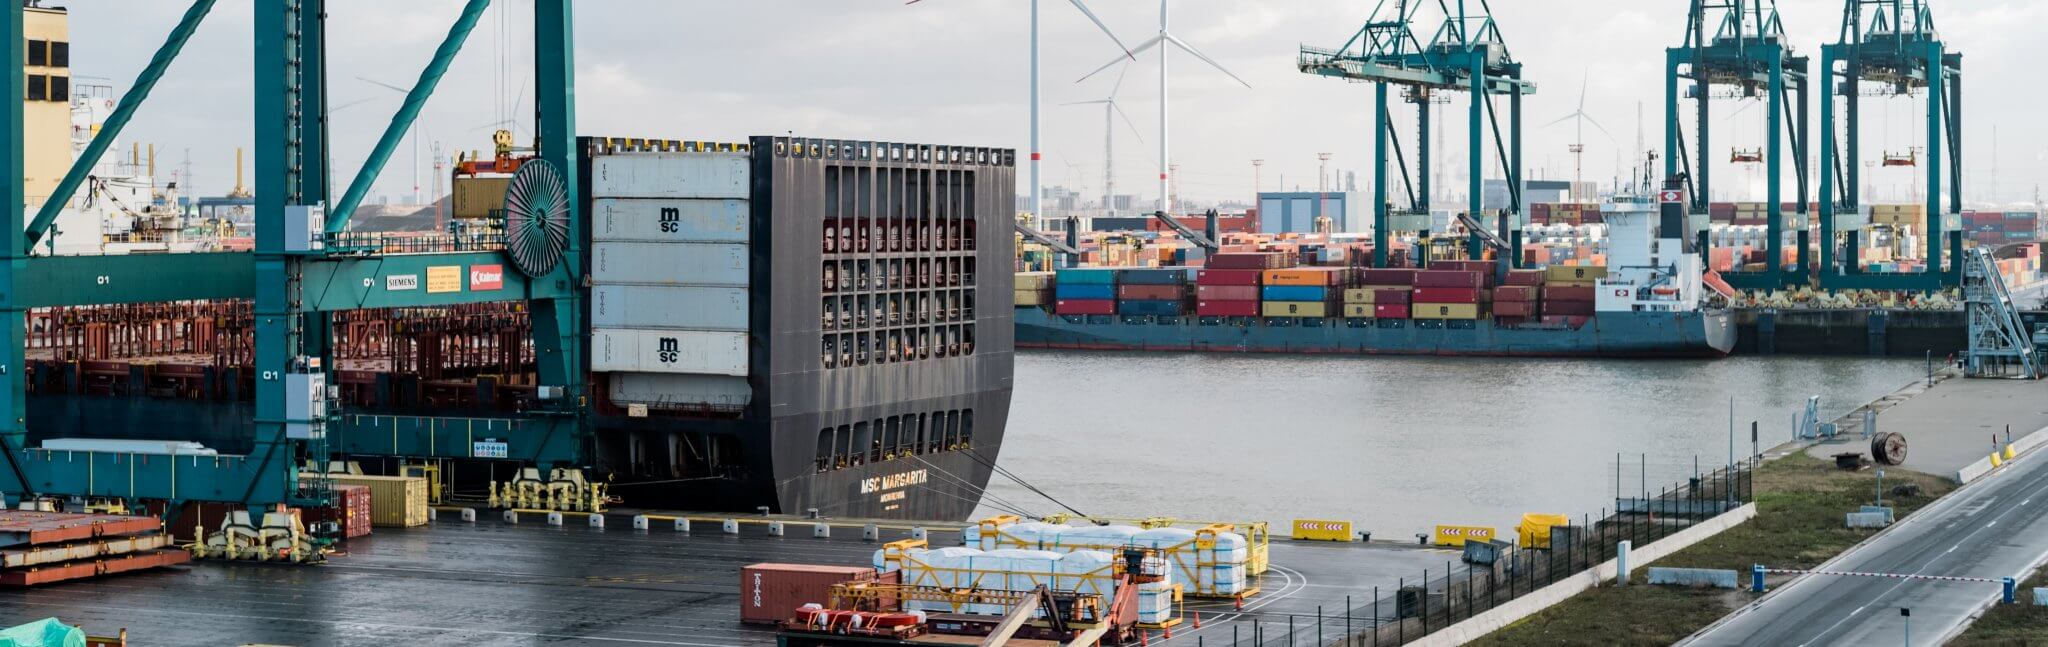 Intelligente Poller im Hafen Antwerpen